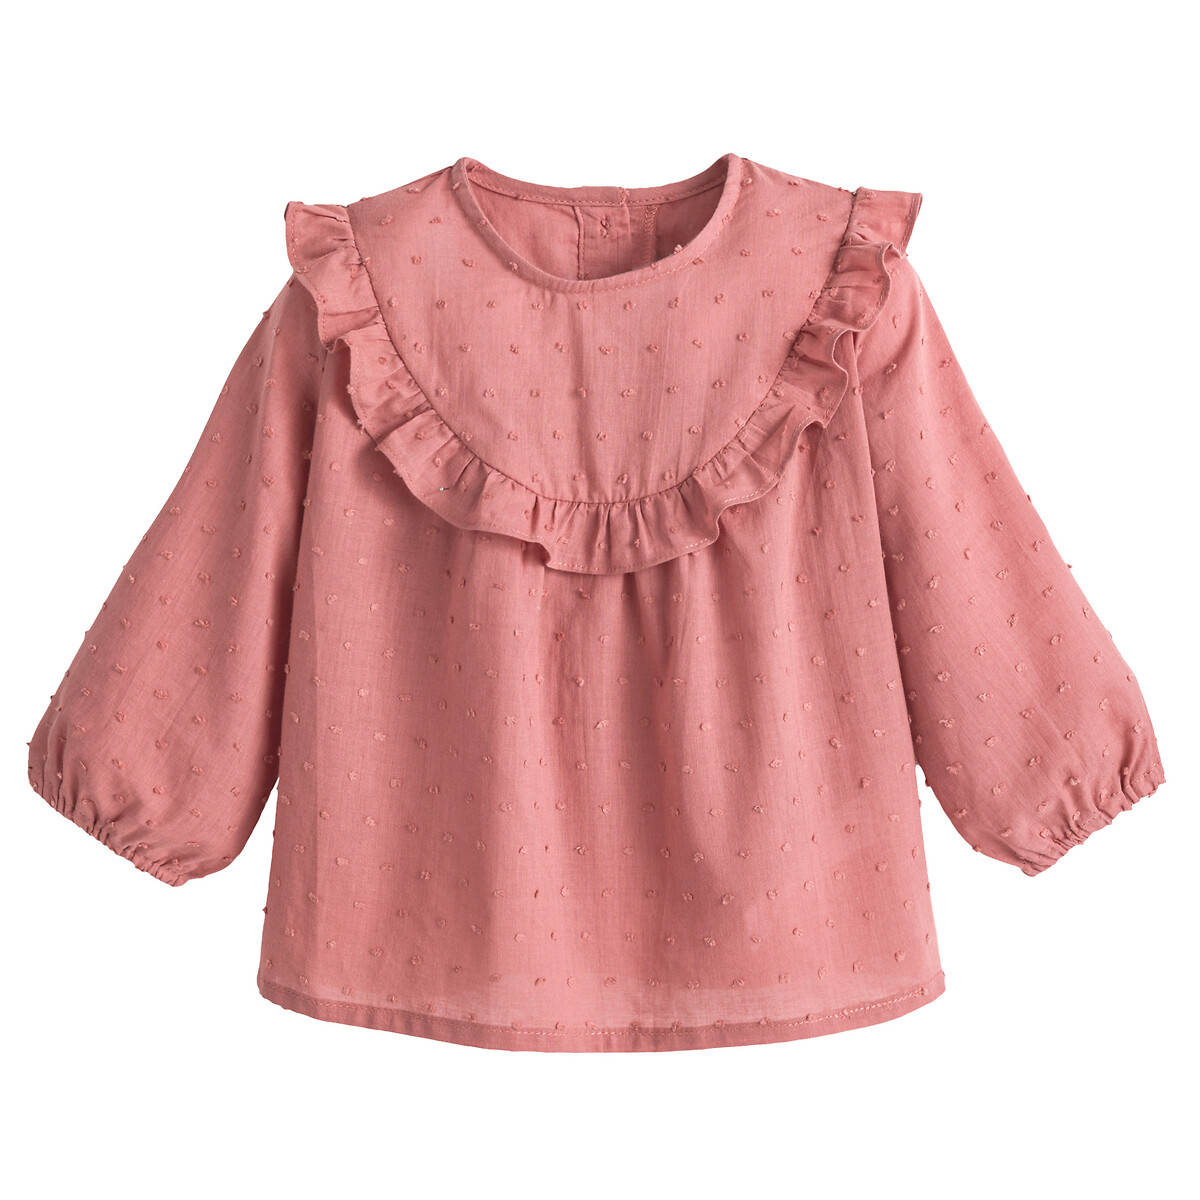 Блузка С длинными рукавами с вышивкой гладью 3 мес-4 лет 6 мес. - 67 см розовый